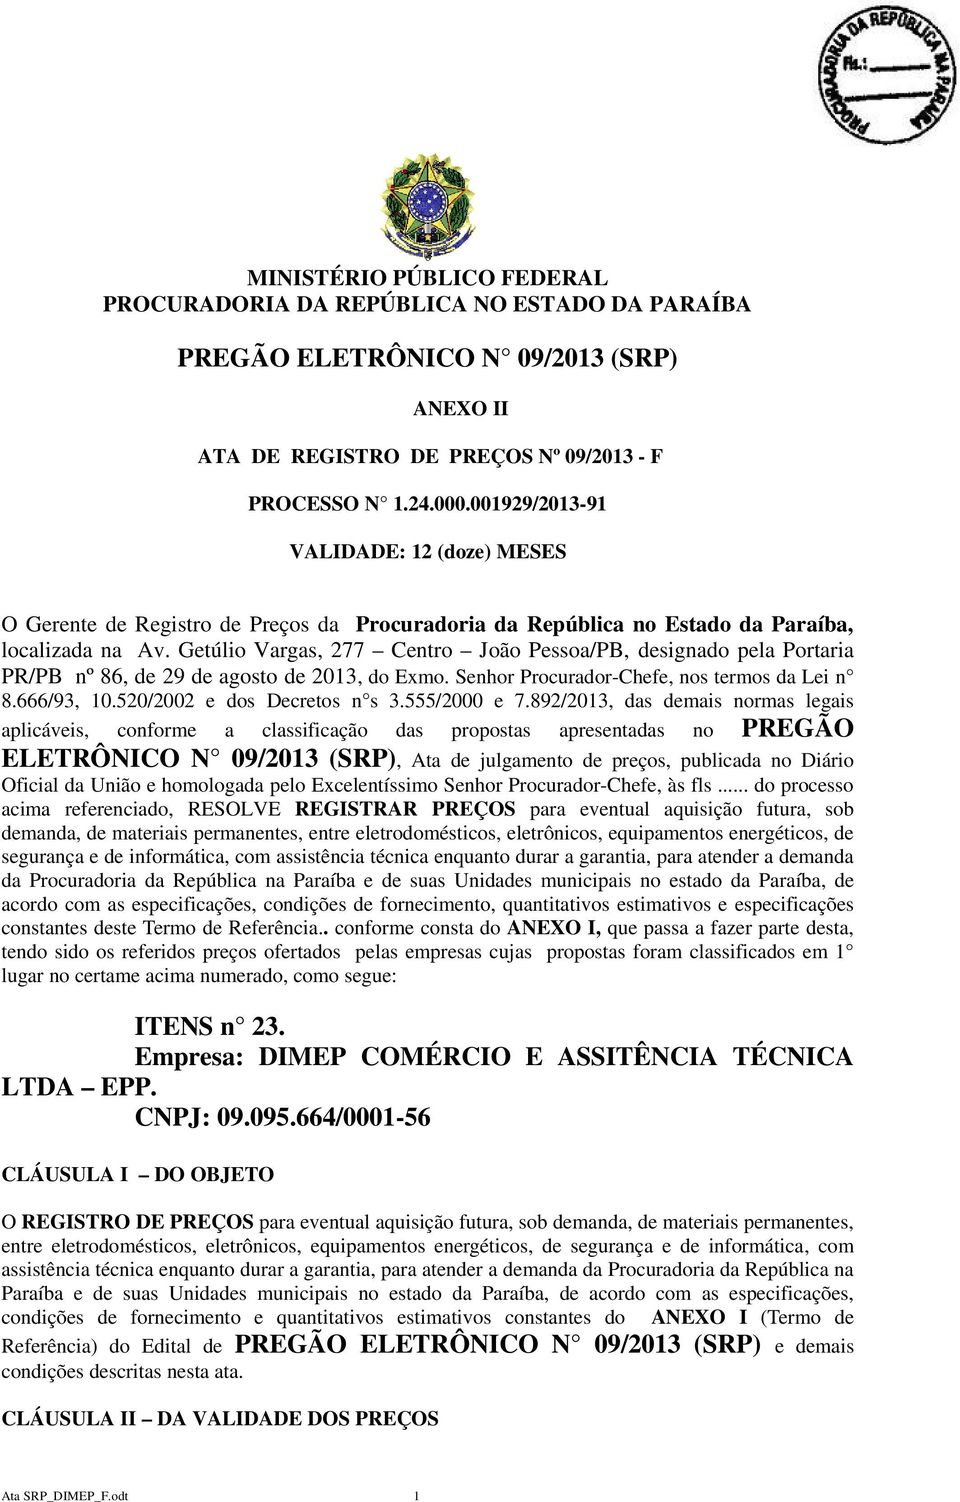 Getúlio Vargas, 277 Centro João Pessoa/PB, designado pela Portaria PR/PB nº 86, de 29 de agosto de 2013, do Exmo. Senhor Procurador-Chefe, nos termos da Lei n 8.666/93, 10.